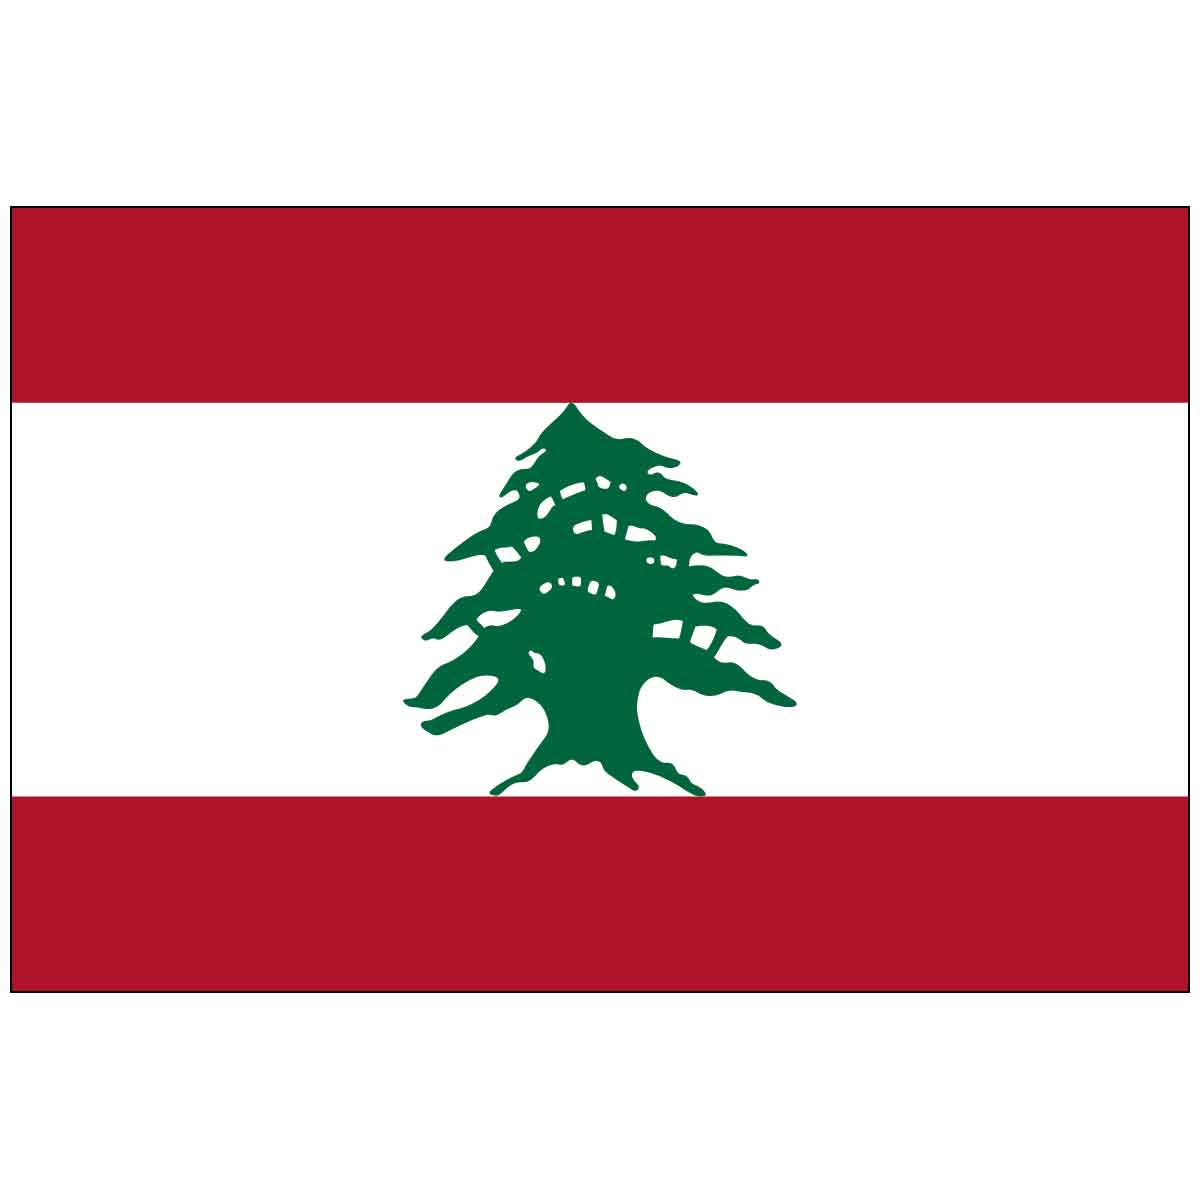 Lebanon (UN) World Flag